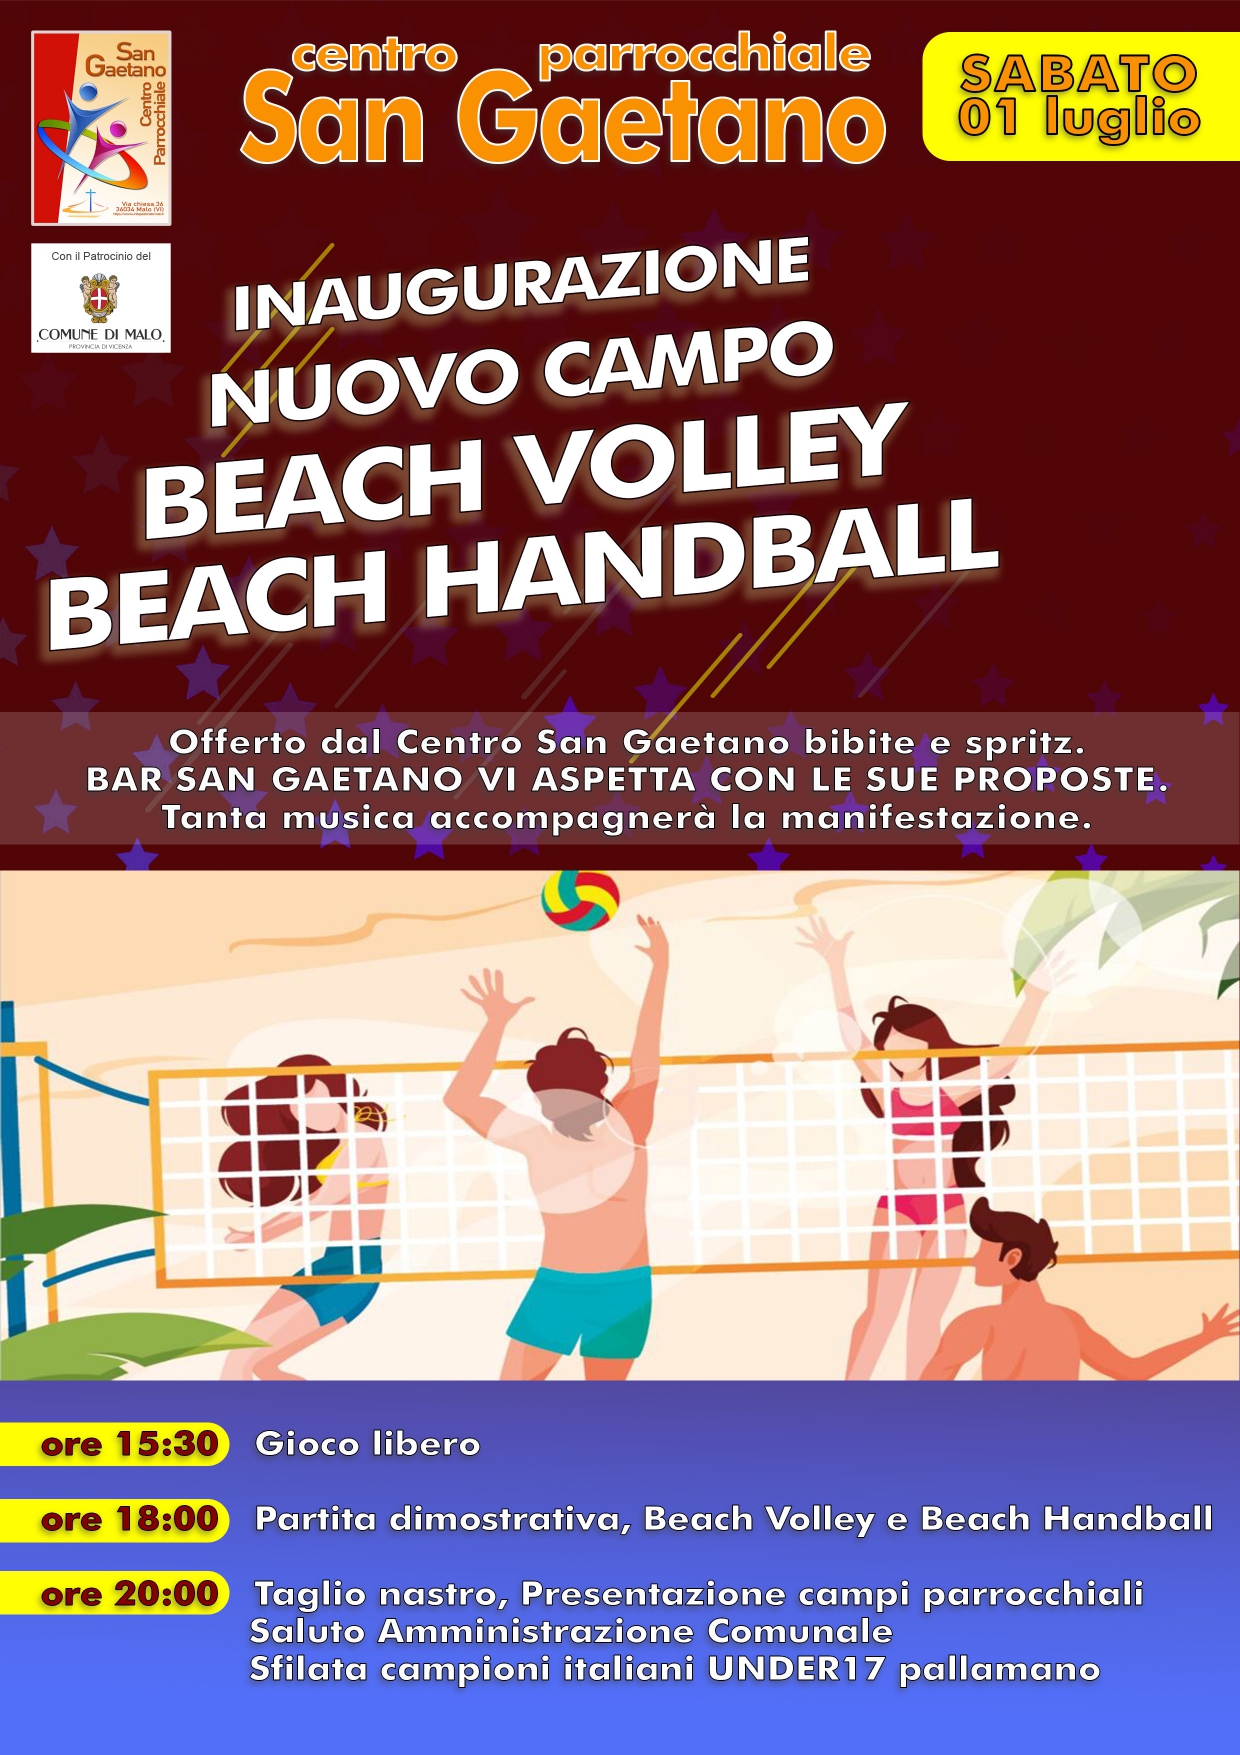 Centro parrocchiale San Gaetano. Inaugurazione nuovo campo Beach Volley Beach Handball